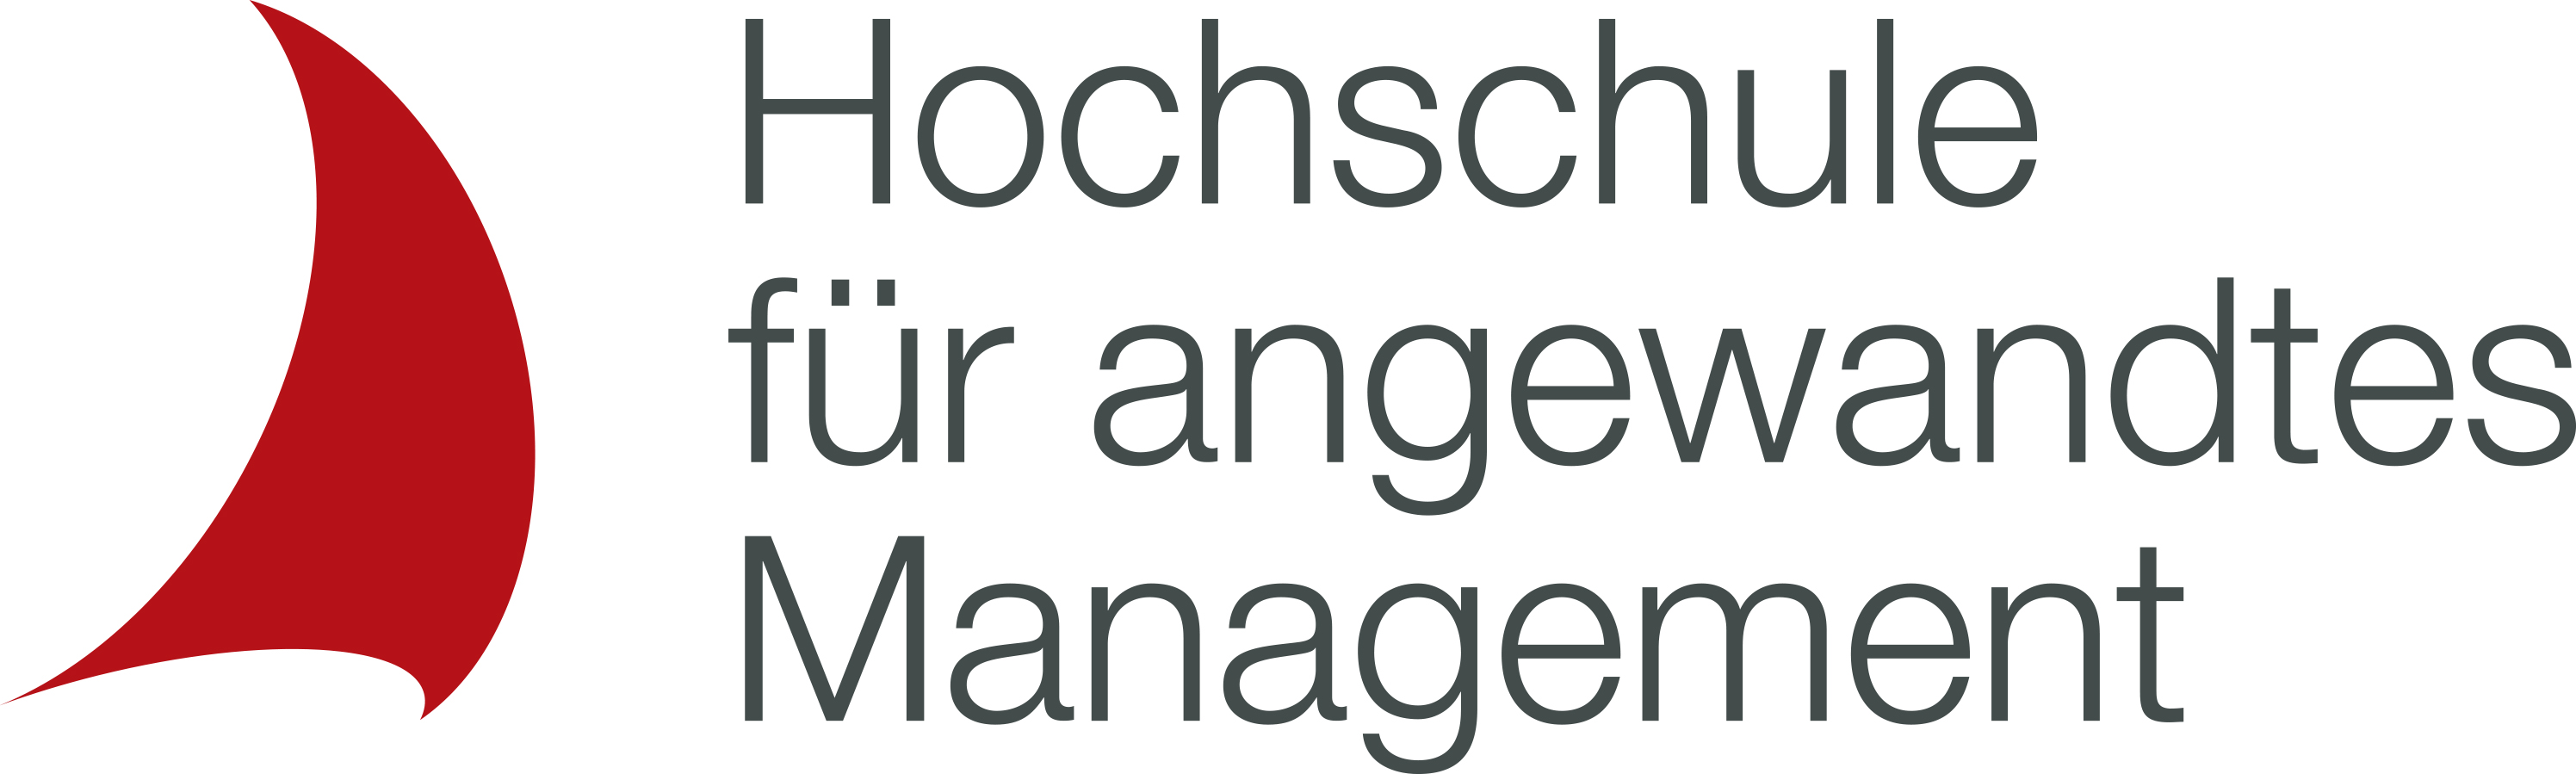 Hochschule für angewandtes Management - Studienort Berlin Logo